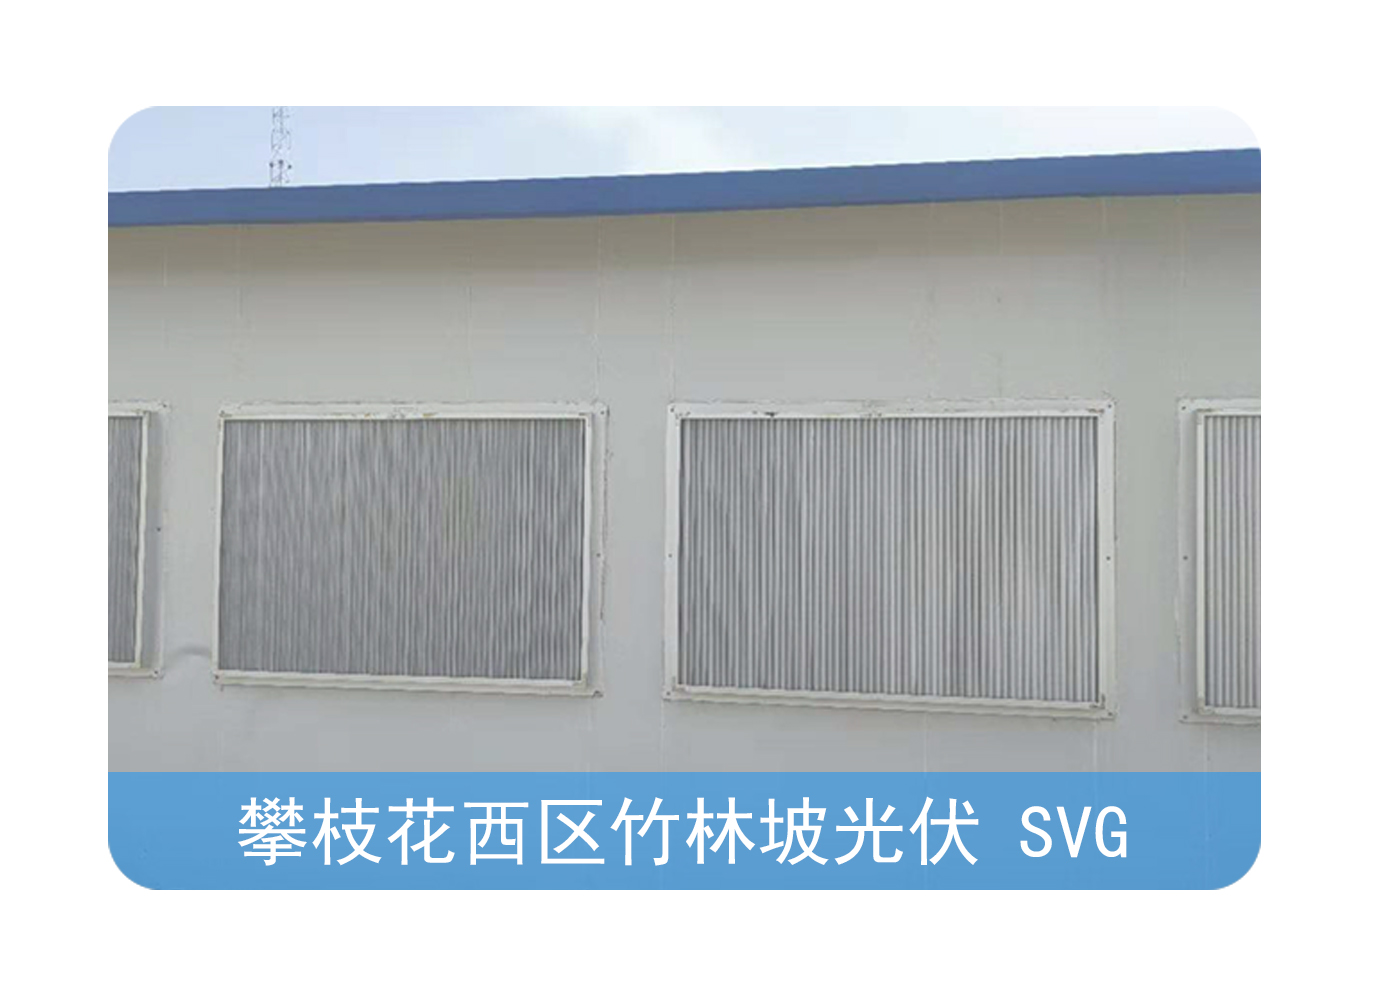 SVG智护通风装置防雨百叶窗